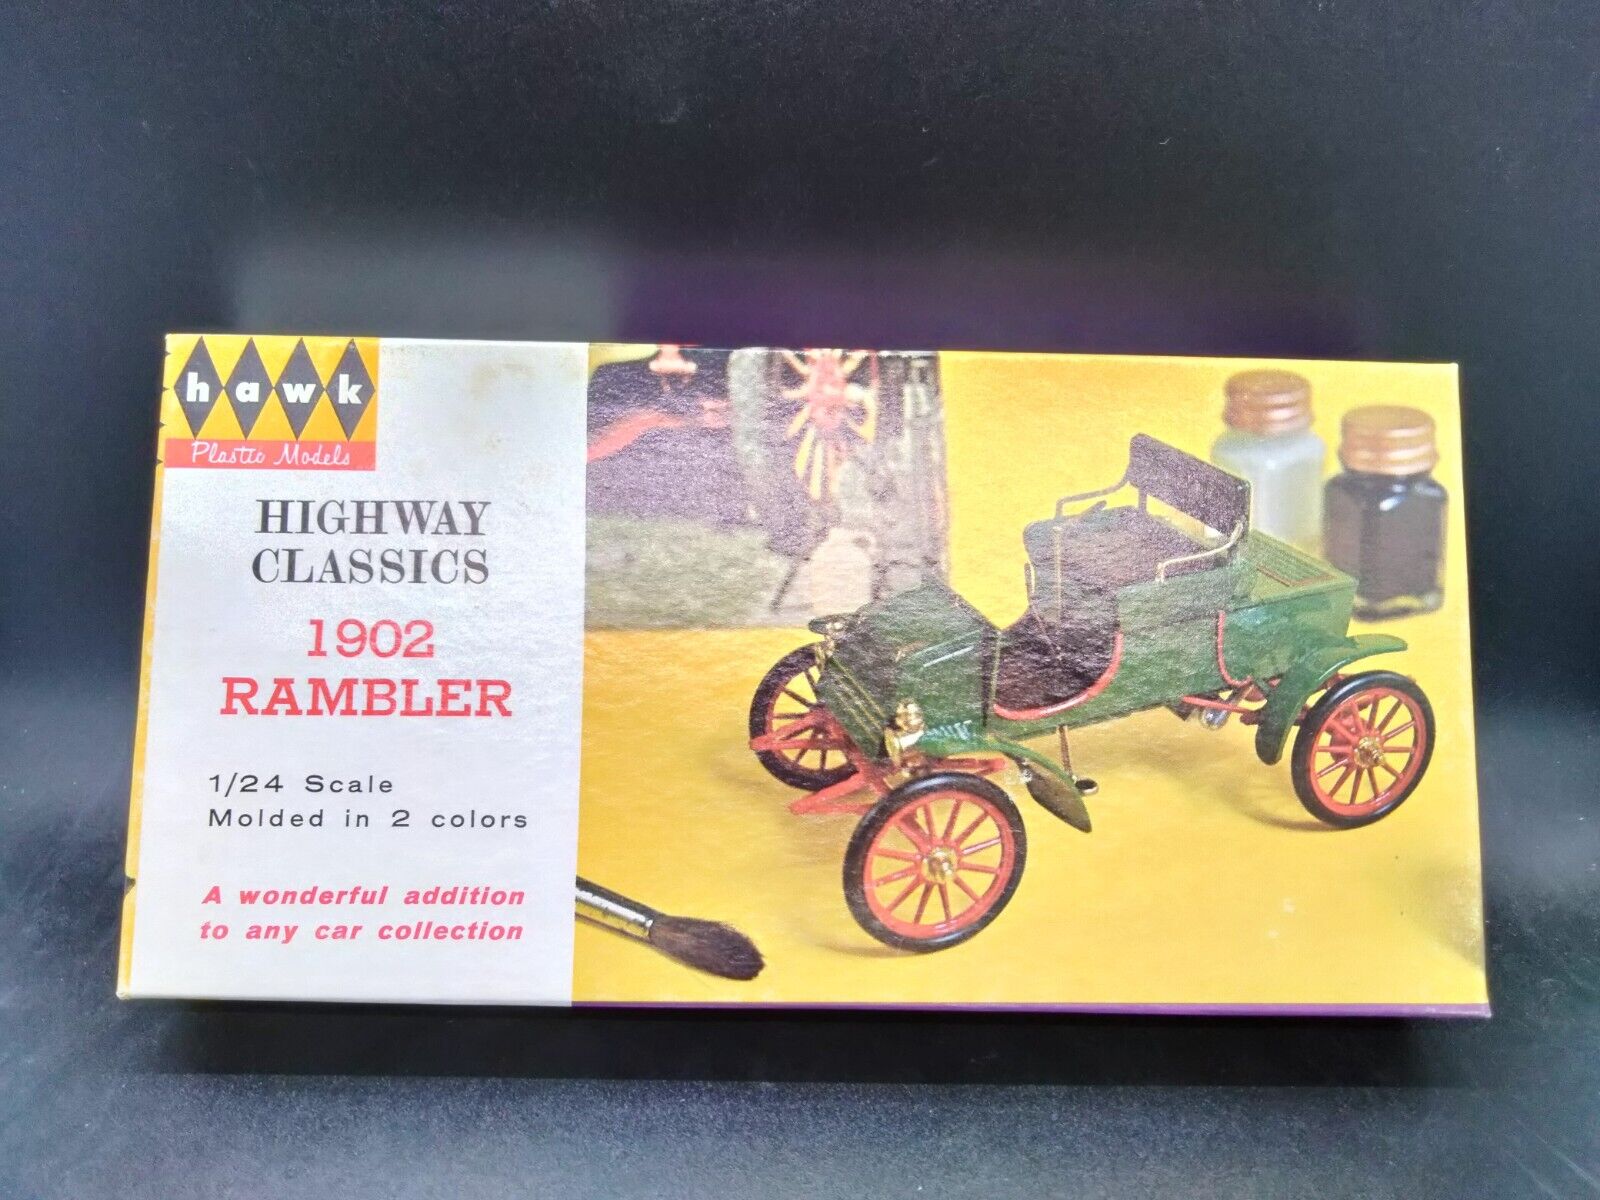 Antique Valuations: Hawk Classics 1902 Rambler Highway Classics 1:24 Model Kit 634-50 Vintage